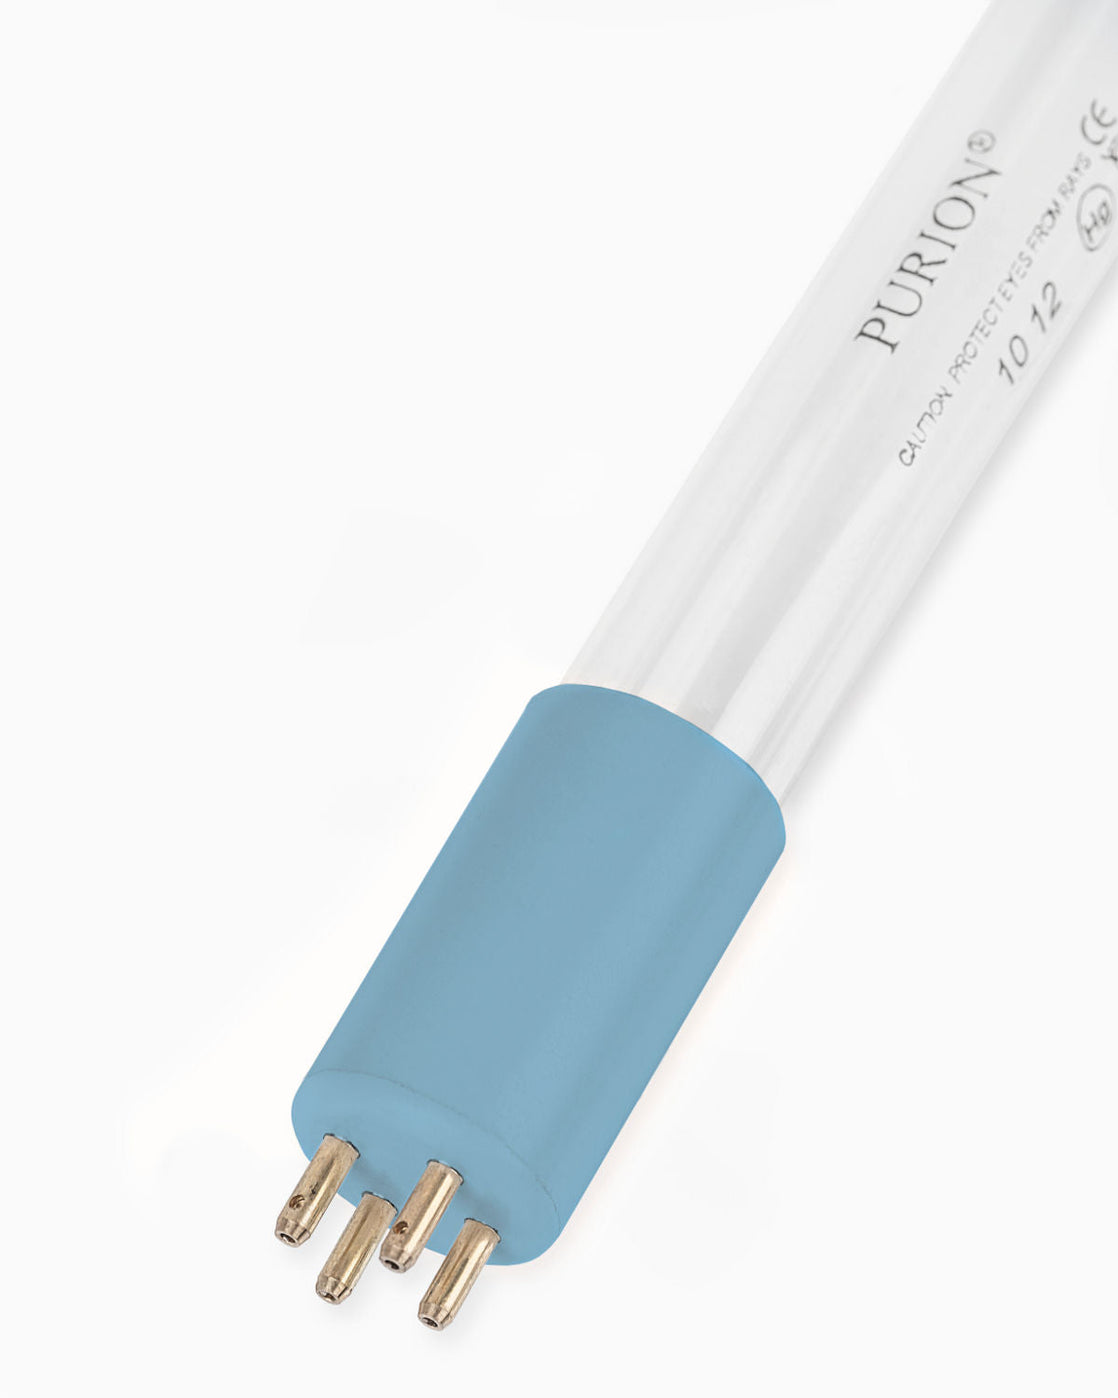 Eine PURION 1000 110 - 240 V AC OTC-Blaulichtröhre auf weißem Hintergrund. (Markenname: PURION GmbH)